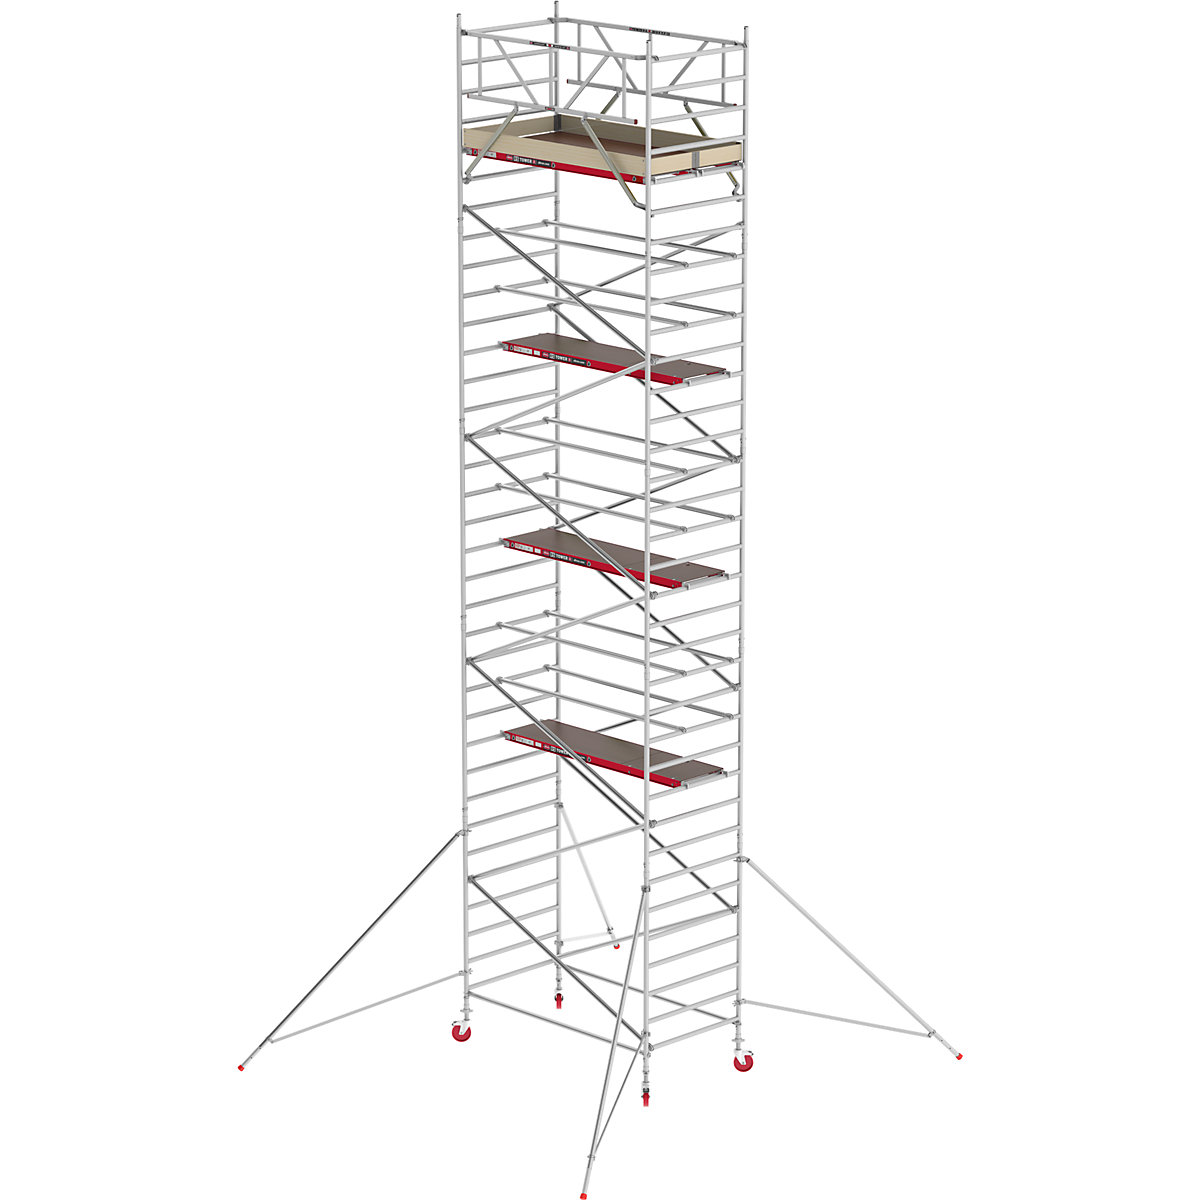 Fahrgerüst RS TOWER 42 breit Altrex, Holzplattform, Länge 1,85 m, Arbeitshöhe 11,20 m